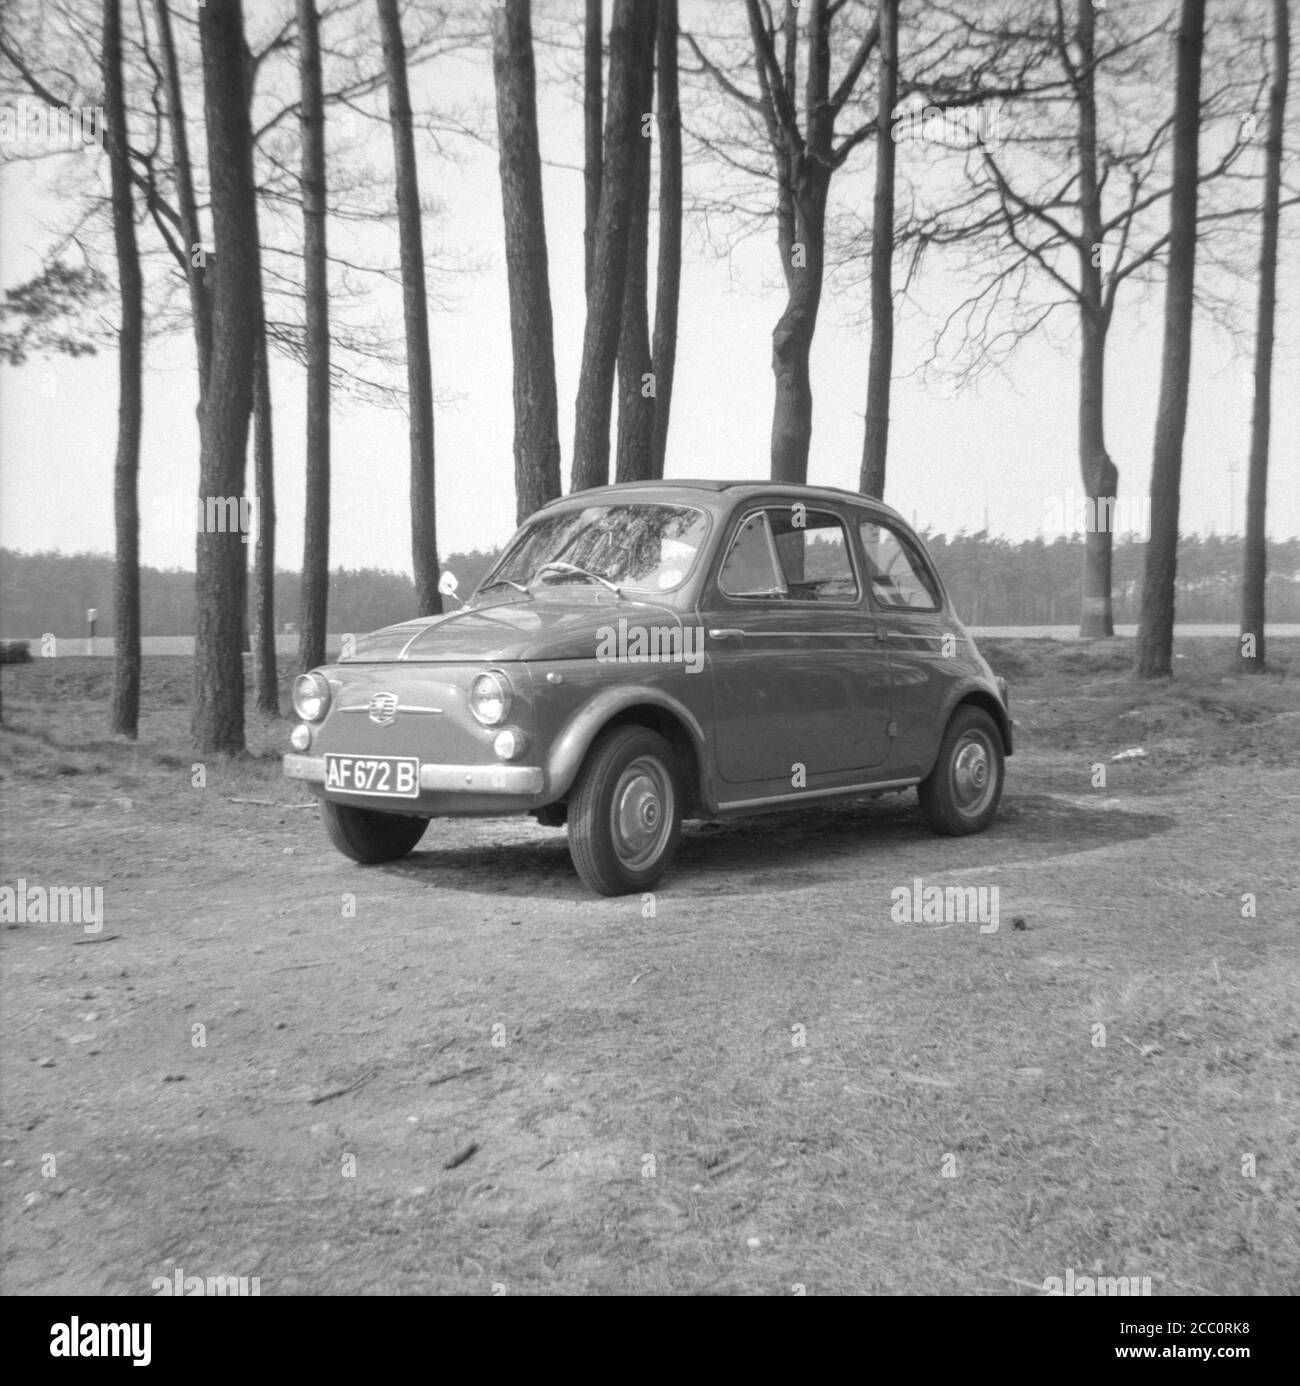 Un'originale Fiat 500 D d'epoca o Fiat Nuova cinquecento una piccola auto italiana e un classico design a motore posteriore fotografato nel 1964. La Fiat 500 è stata prodotta dal 1957 al 1975 e progettata da Dante Giacosa Foto Stock